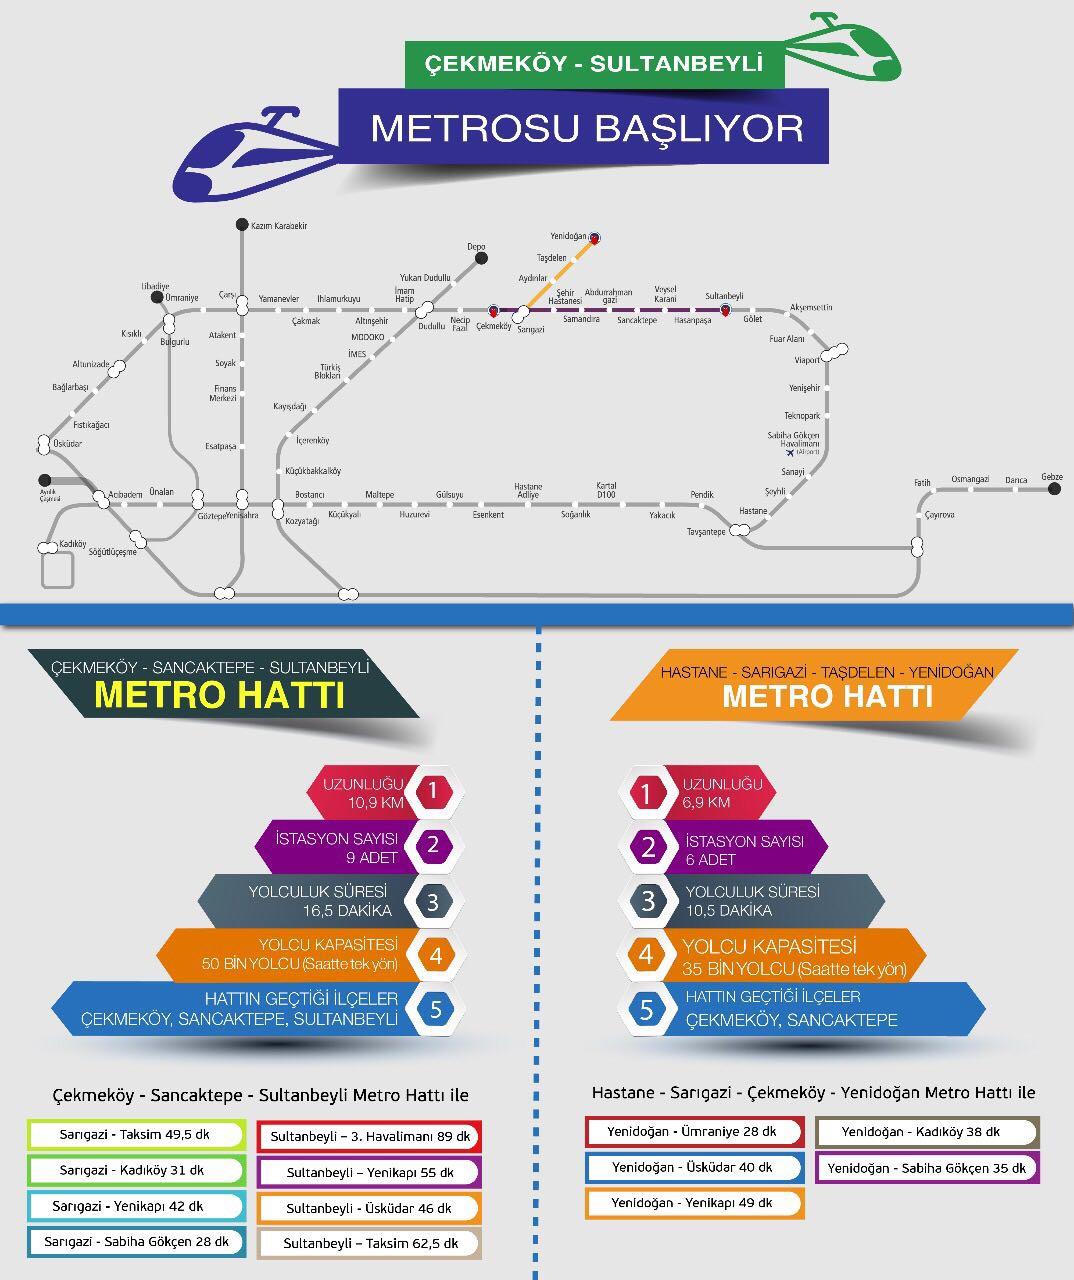 Çekmeköy - Sancaktepe - Sultanbeyli Metro Hattı ve Hastane - Sarıgazi - Çekmeköy Taşdelen - Yenidoğan Metro Hattı